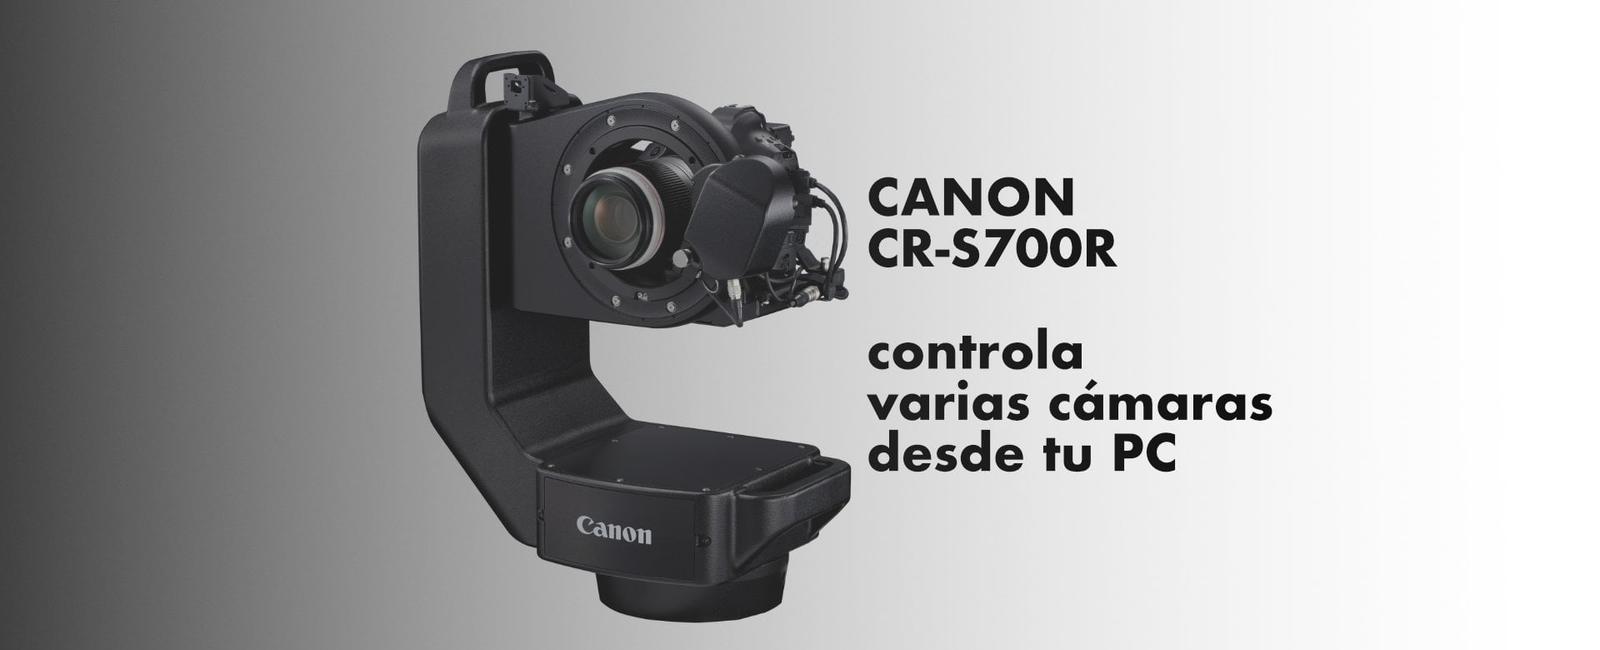 Canon CR-S700R: La revolución en la fotografía profesional con cámara robótica